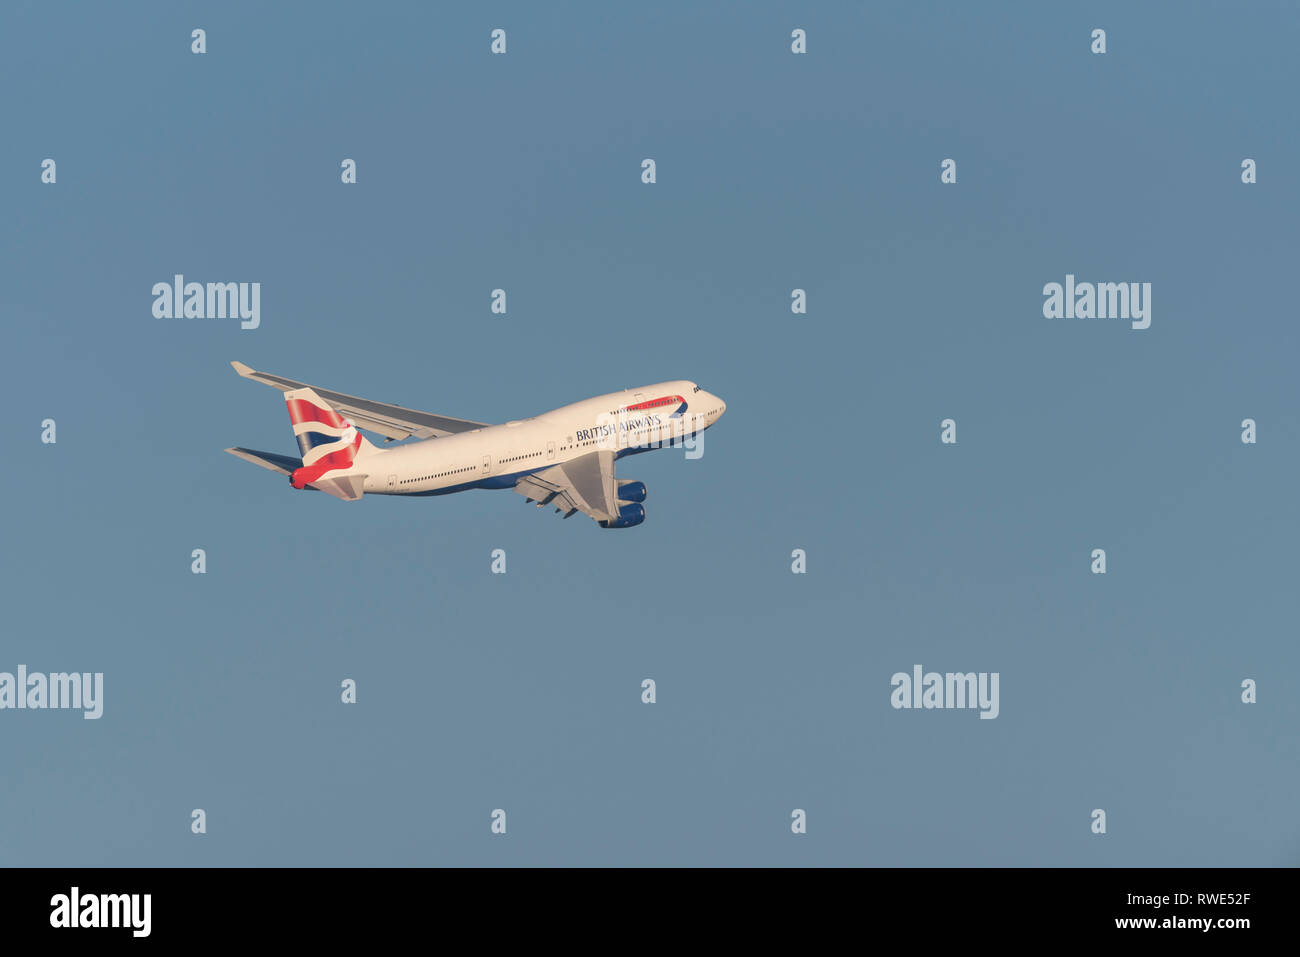 British Airways Boeing 747 Jumbo Jet aereo di linea G-BYGE decolla dall'aeroporto di Londra Heathrow, Regno Unito, in cielo blu Foto Stock